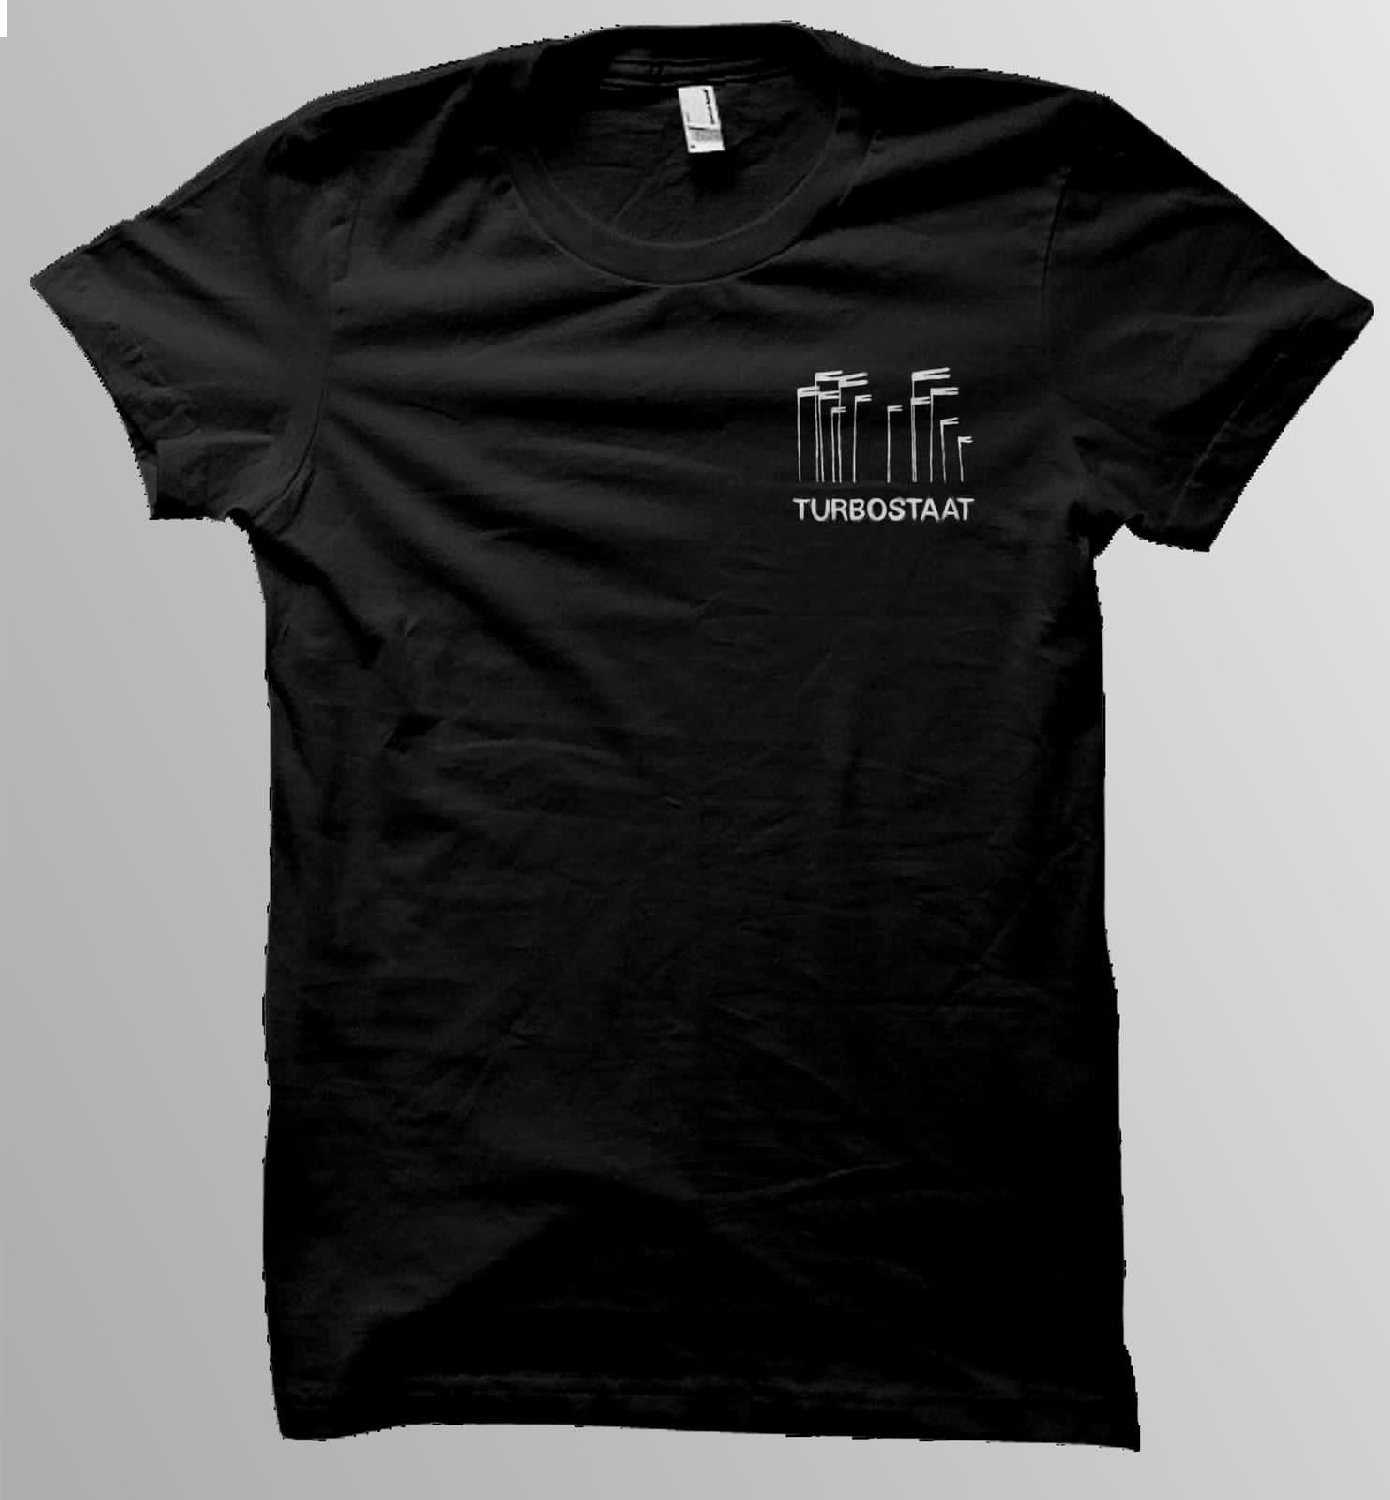 Windhose Shirt Männer T-Shirt schwarz